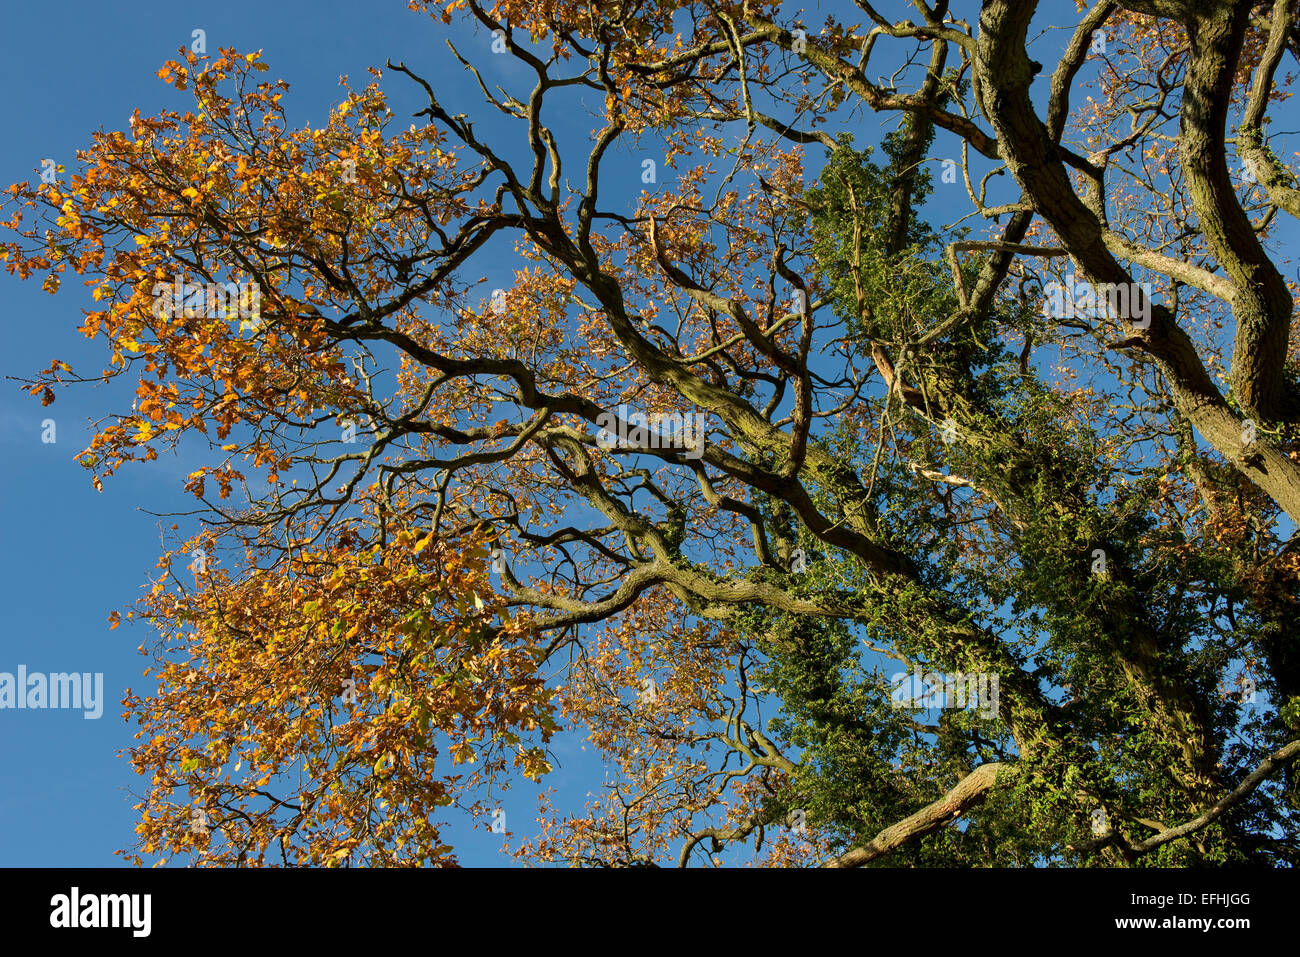 Eine Eiche Baum mit Efeu und Blätter in Herbstfärbung an einem schönen Tag mit blauem Himmel, Berkshire, England, Vereinigtes Königreich, November Stockfoto